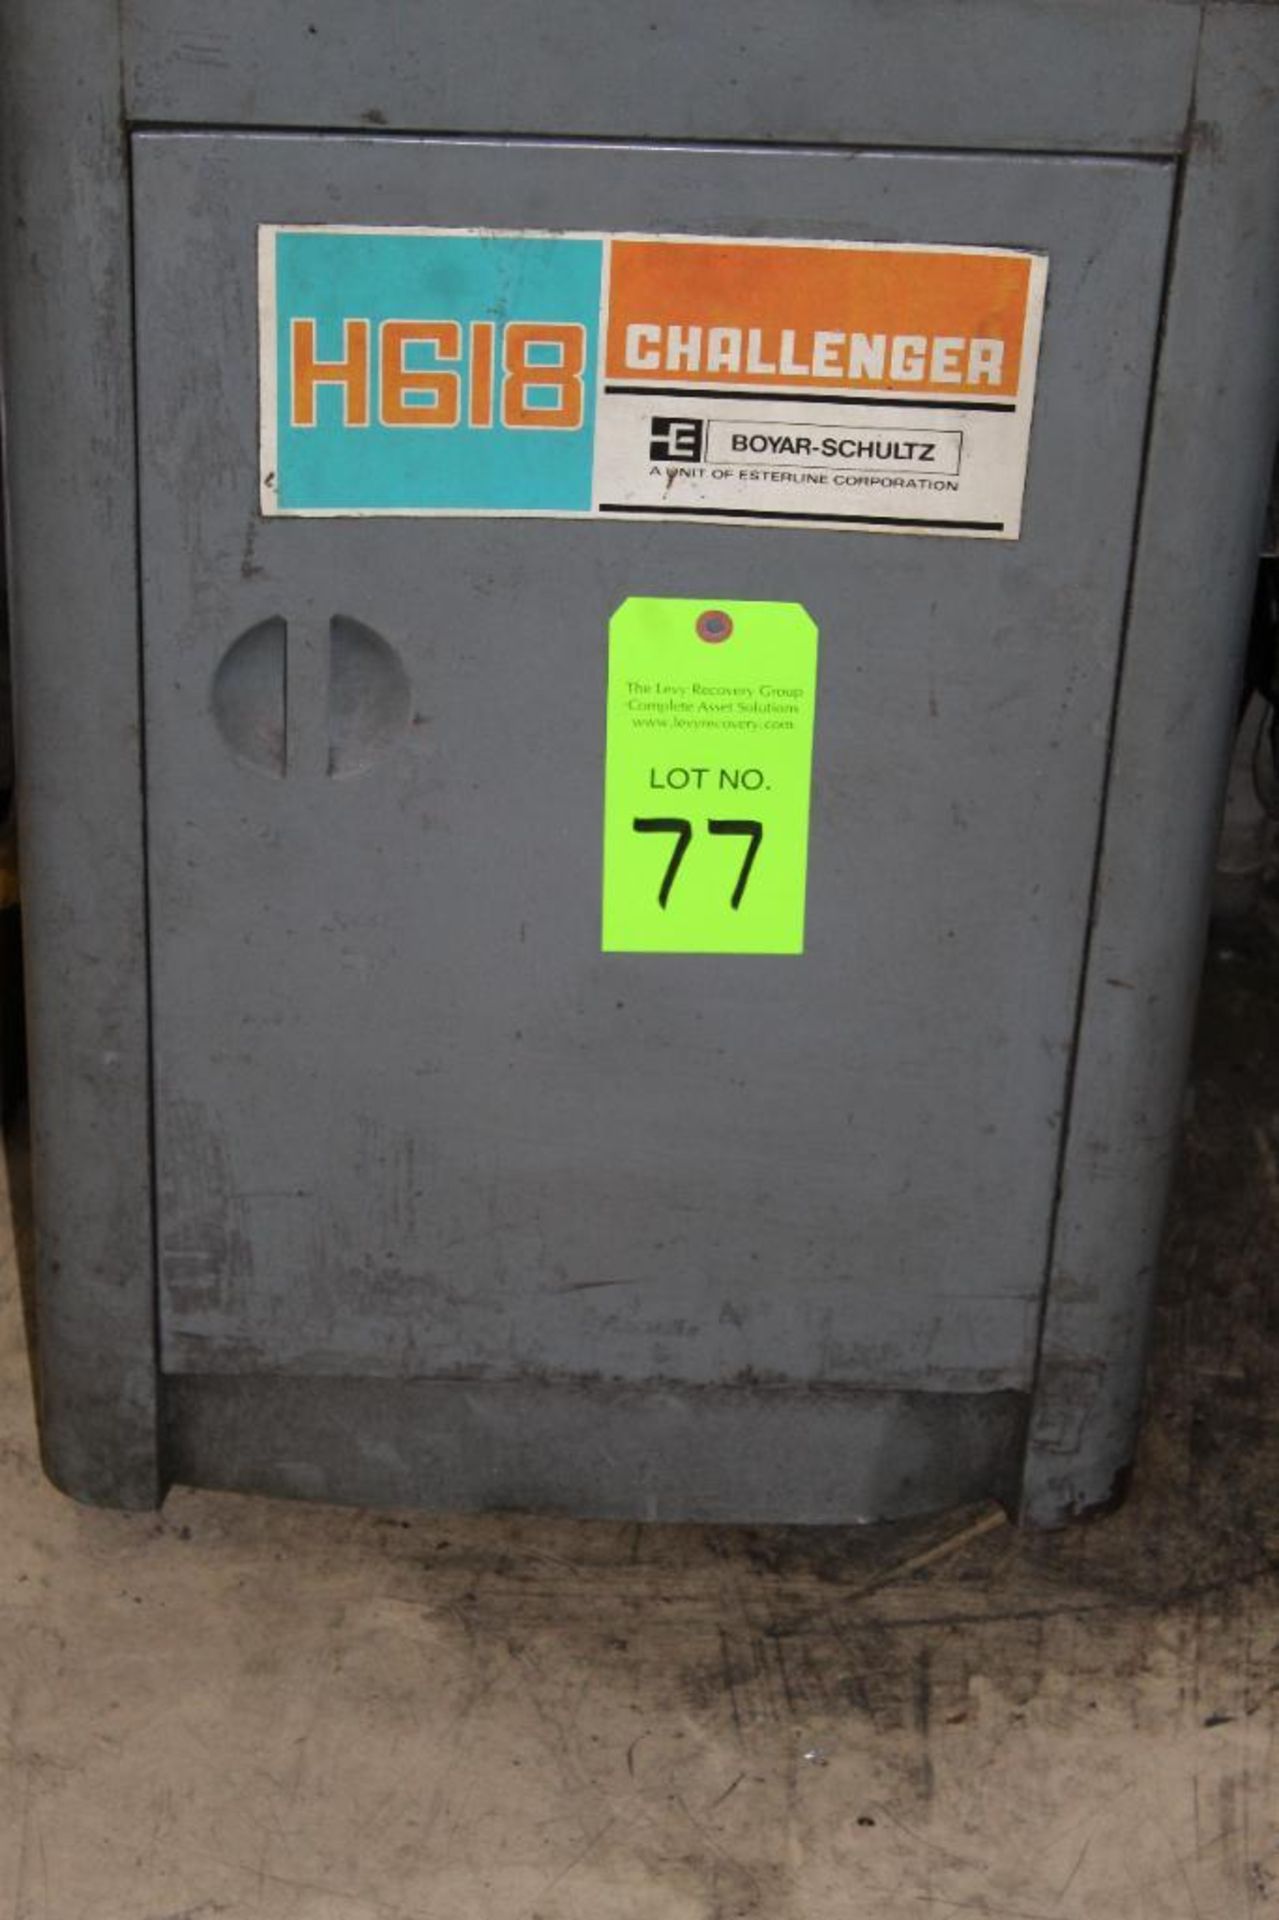 Boyar Schultz Challenger H618 Handfeed Surface Grinder - Image 2 of 12